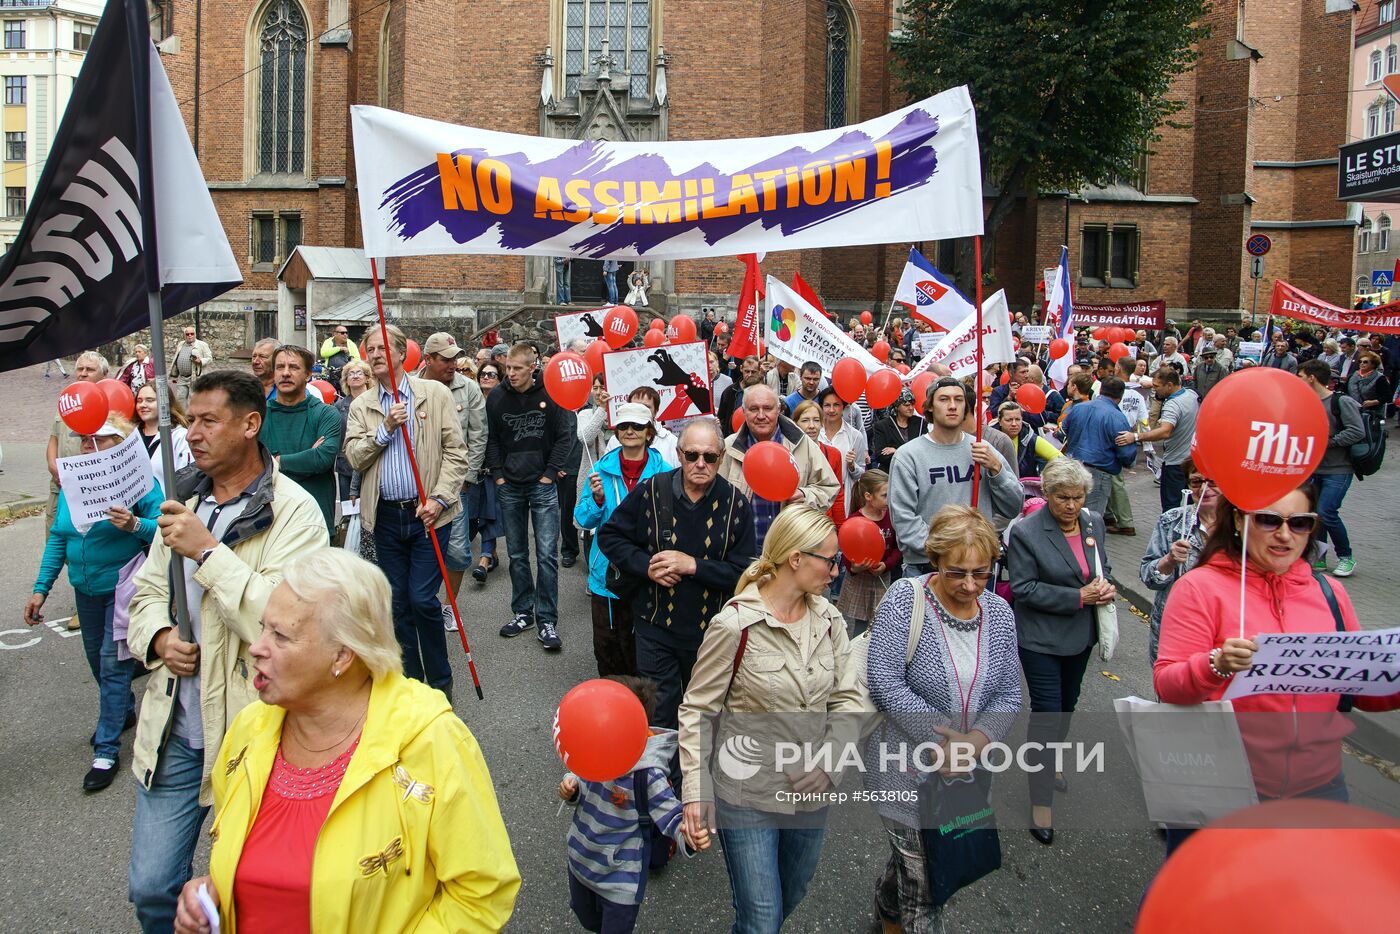 Марш в защиту русских школ в Латвии